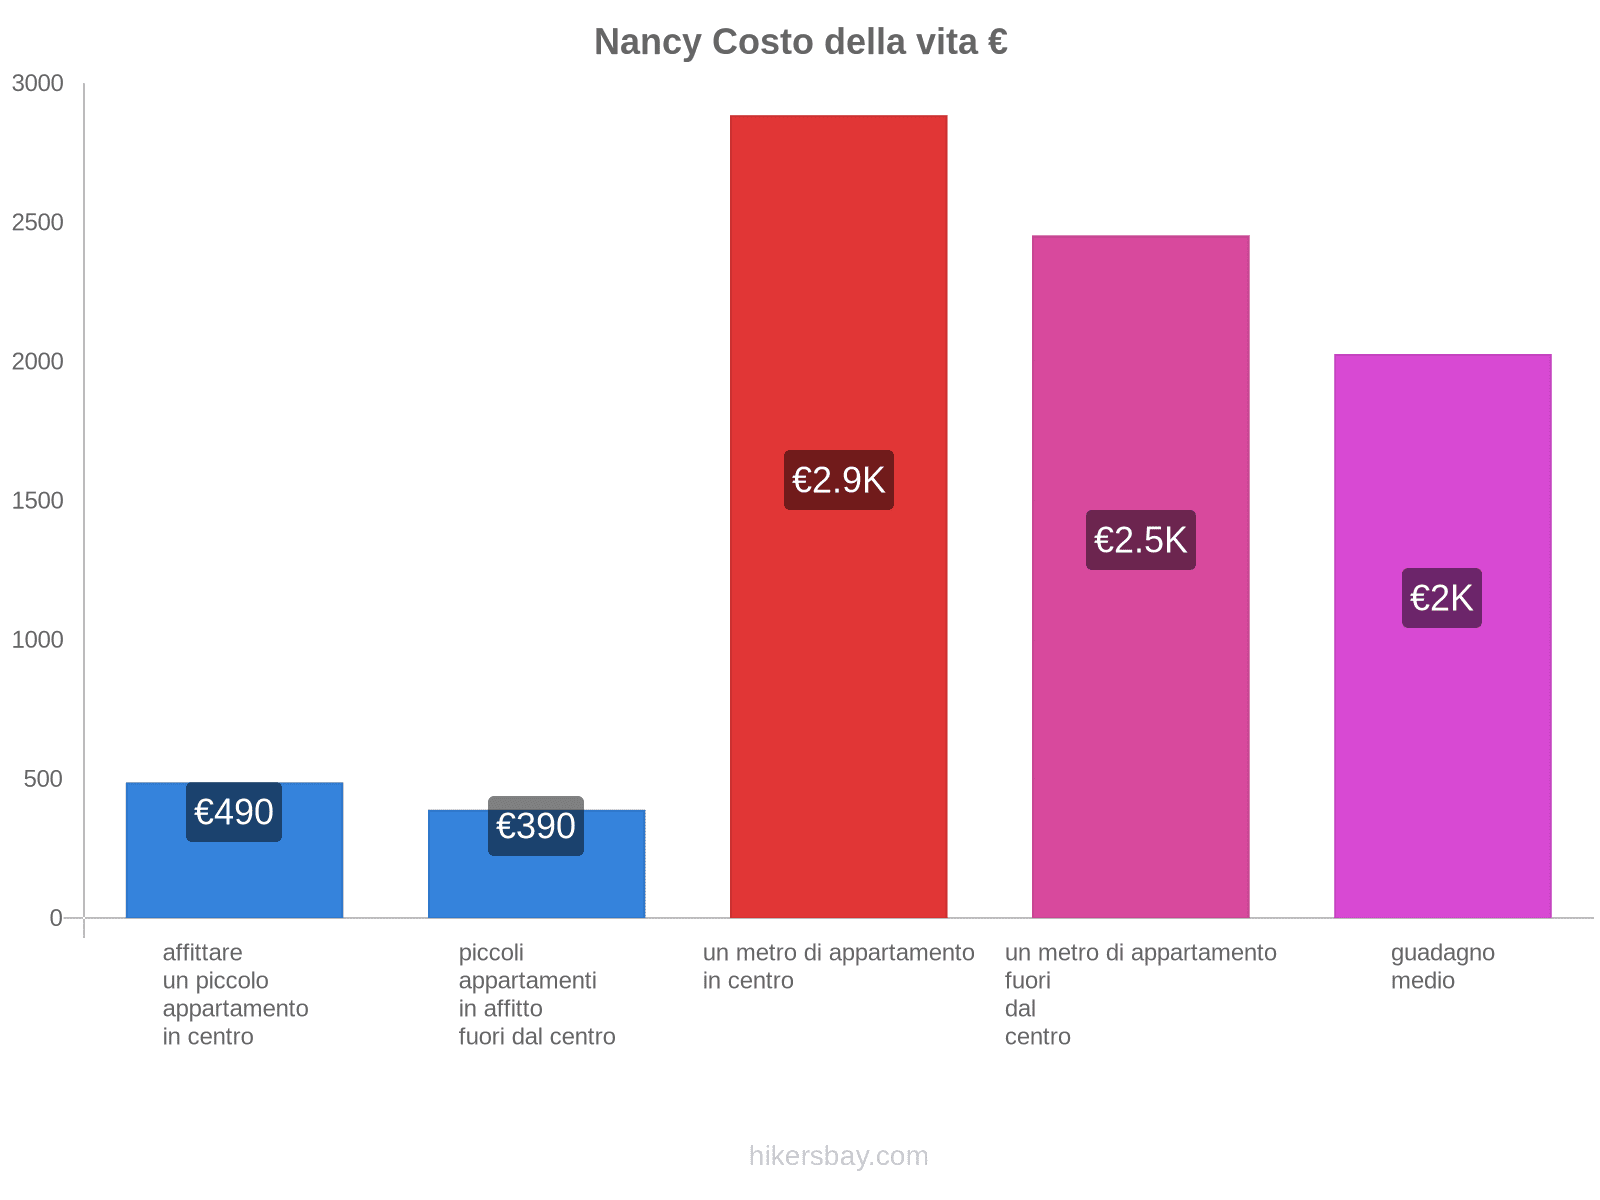 Nancy costo della vita hikersbay.com